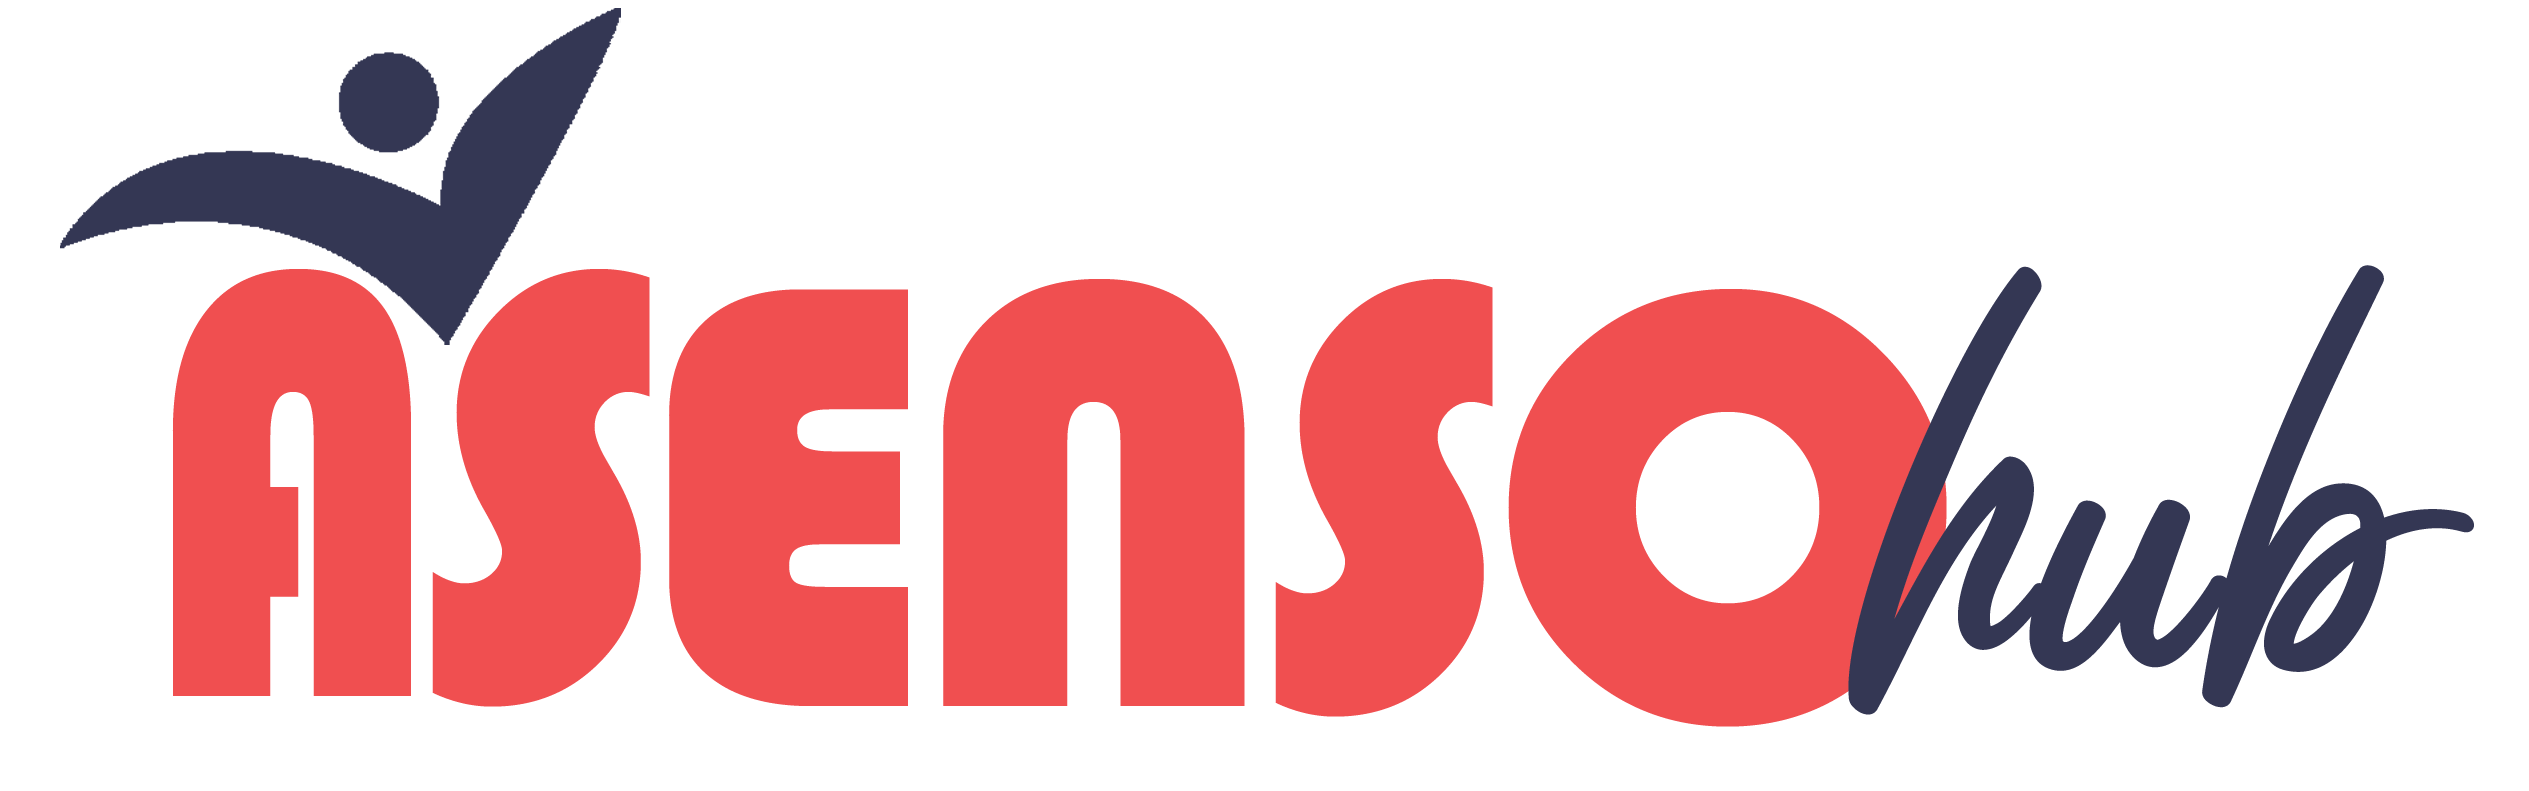 The Asenso Hub Blog